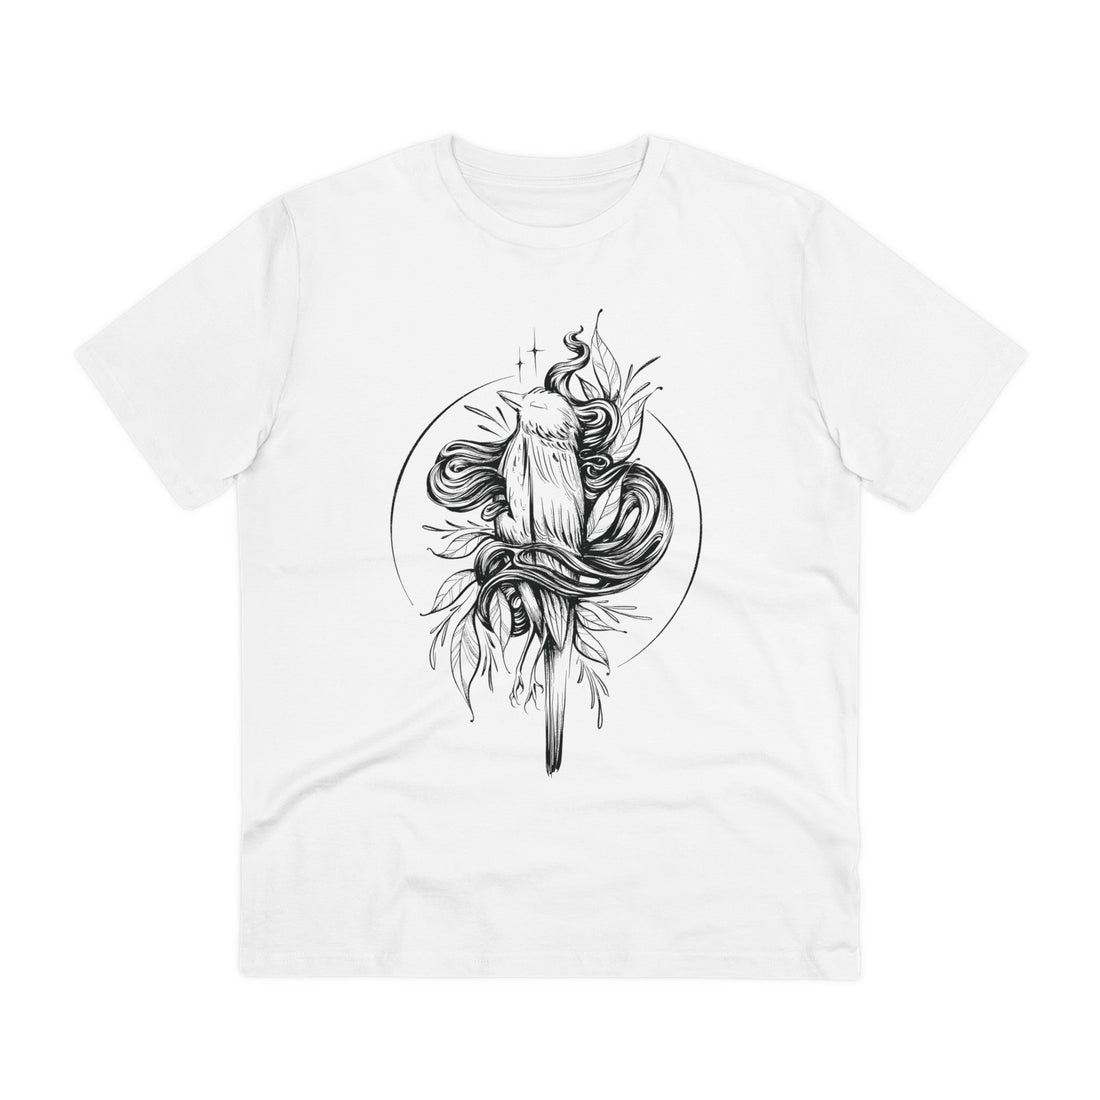 Printify T-Shirt White / 2XS Dead Bird - Hand Drawn Dark Gothic - Front Design